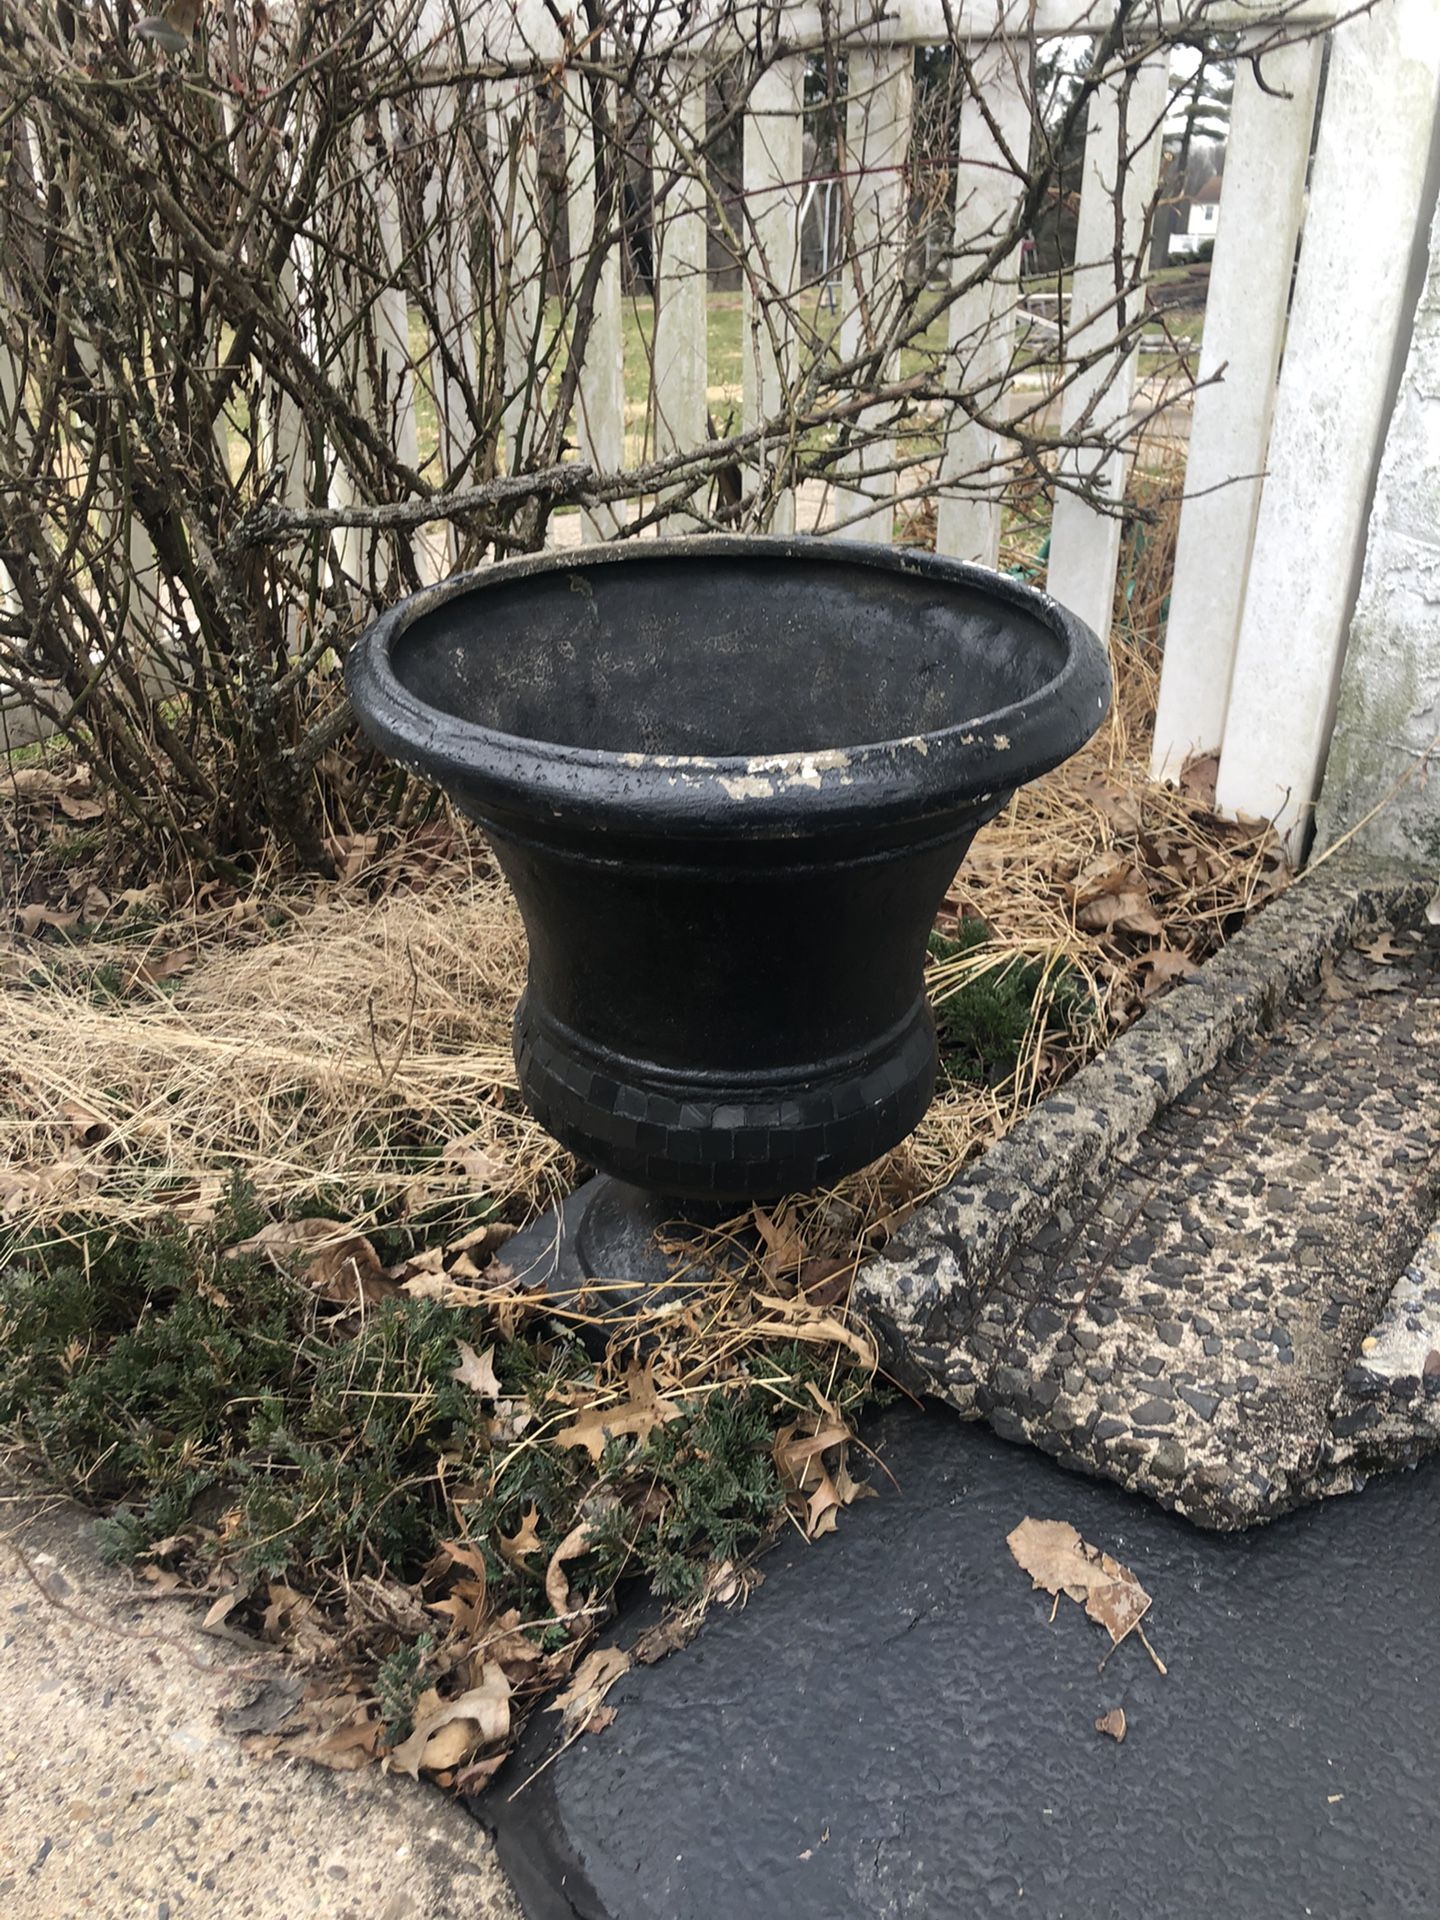 2 Outdoor flower pots